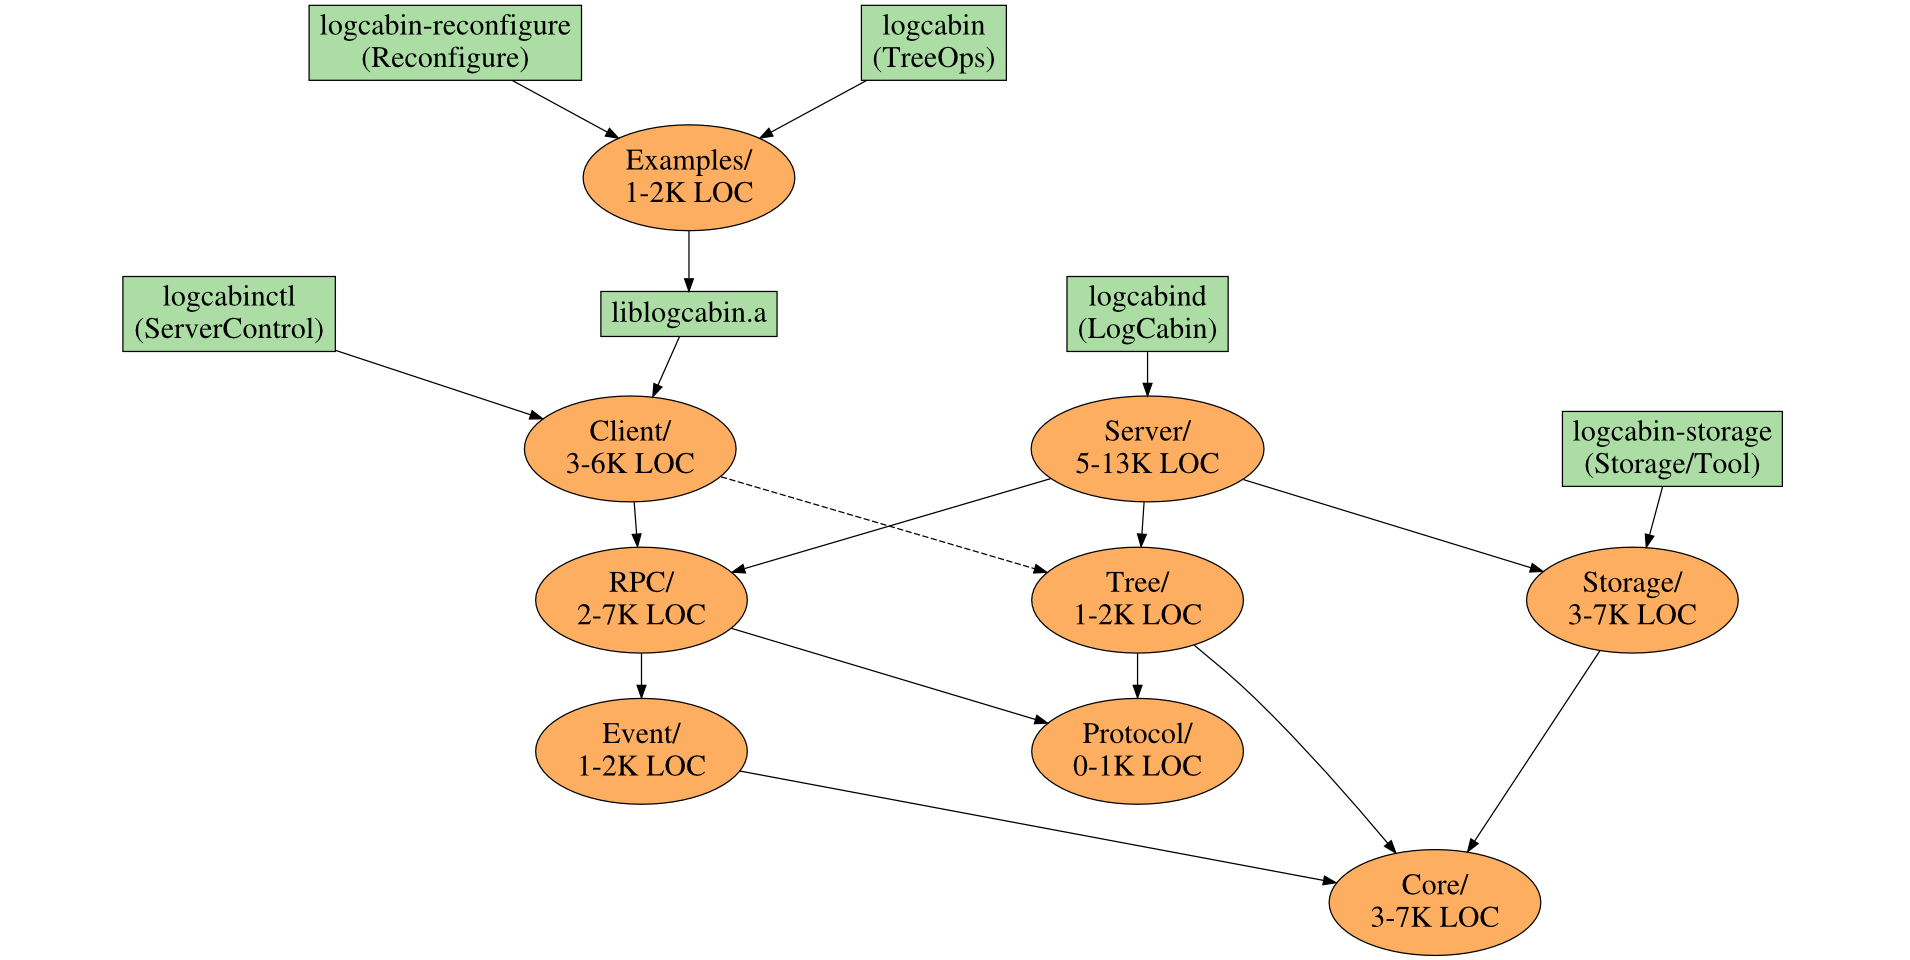 LogCabin code layout